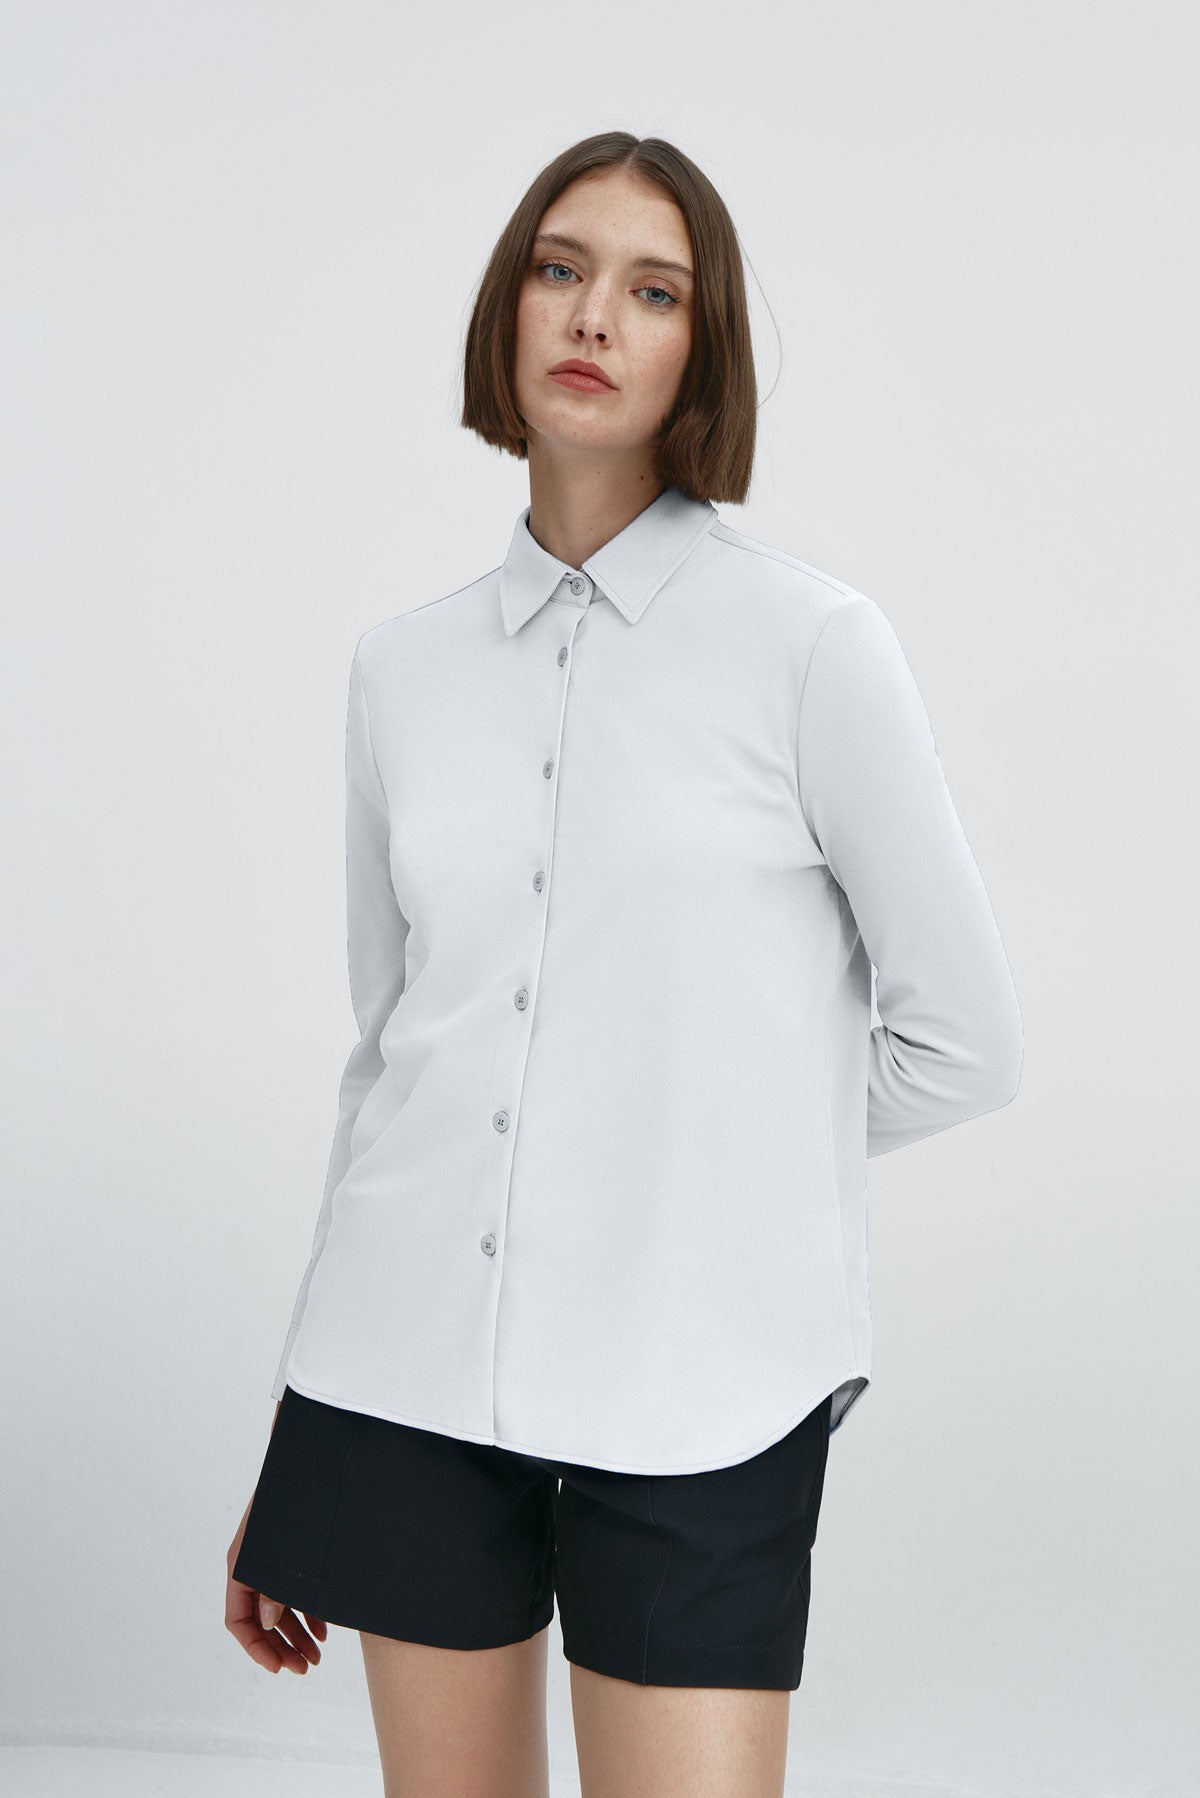 Camisa manga larga oversized mujer blanca: Camisa holgada de mujer blanca de manga larga para un estilo extra. Foto frente